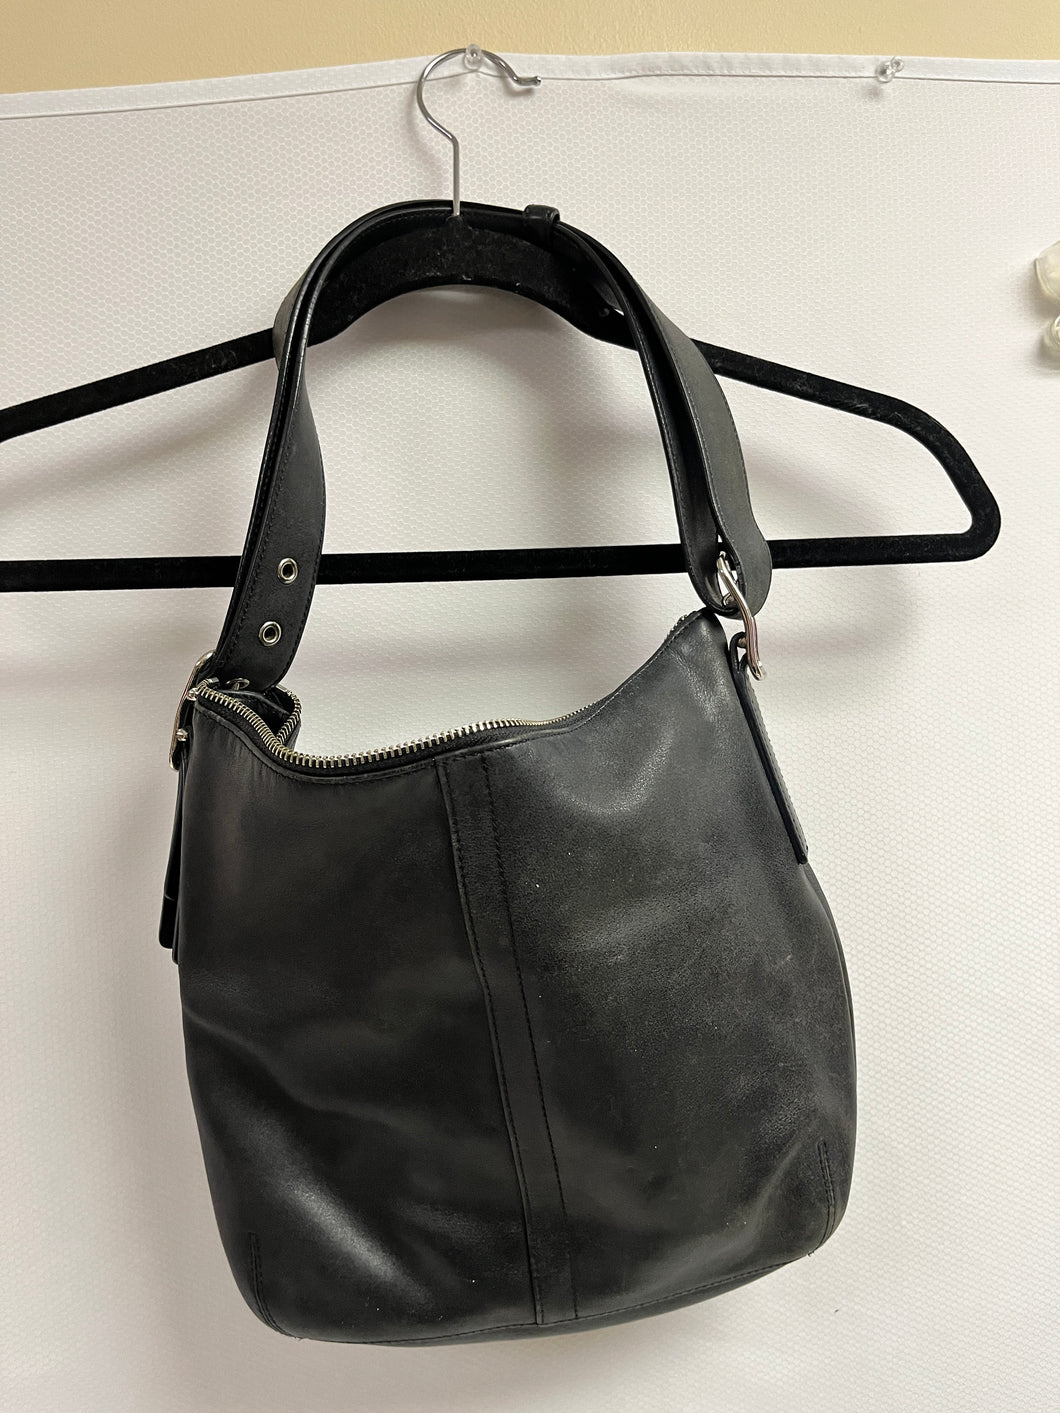 Vintage COACH Handbag Clutch Black Pouch Wristlet Purse Adjustable Strap One Size